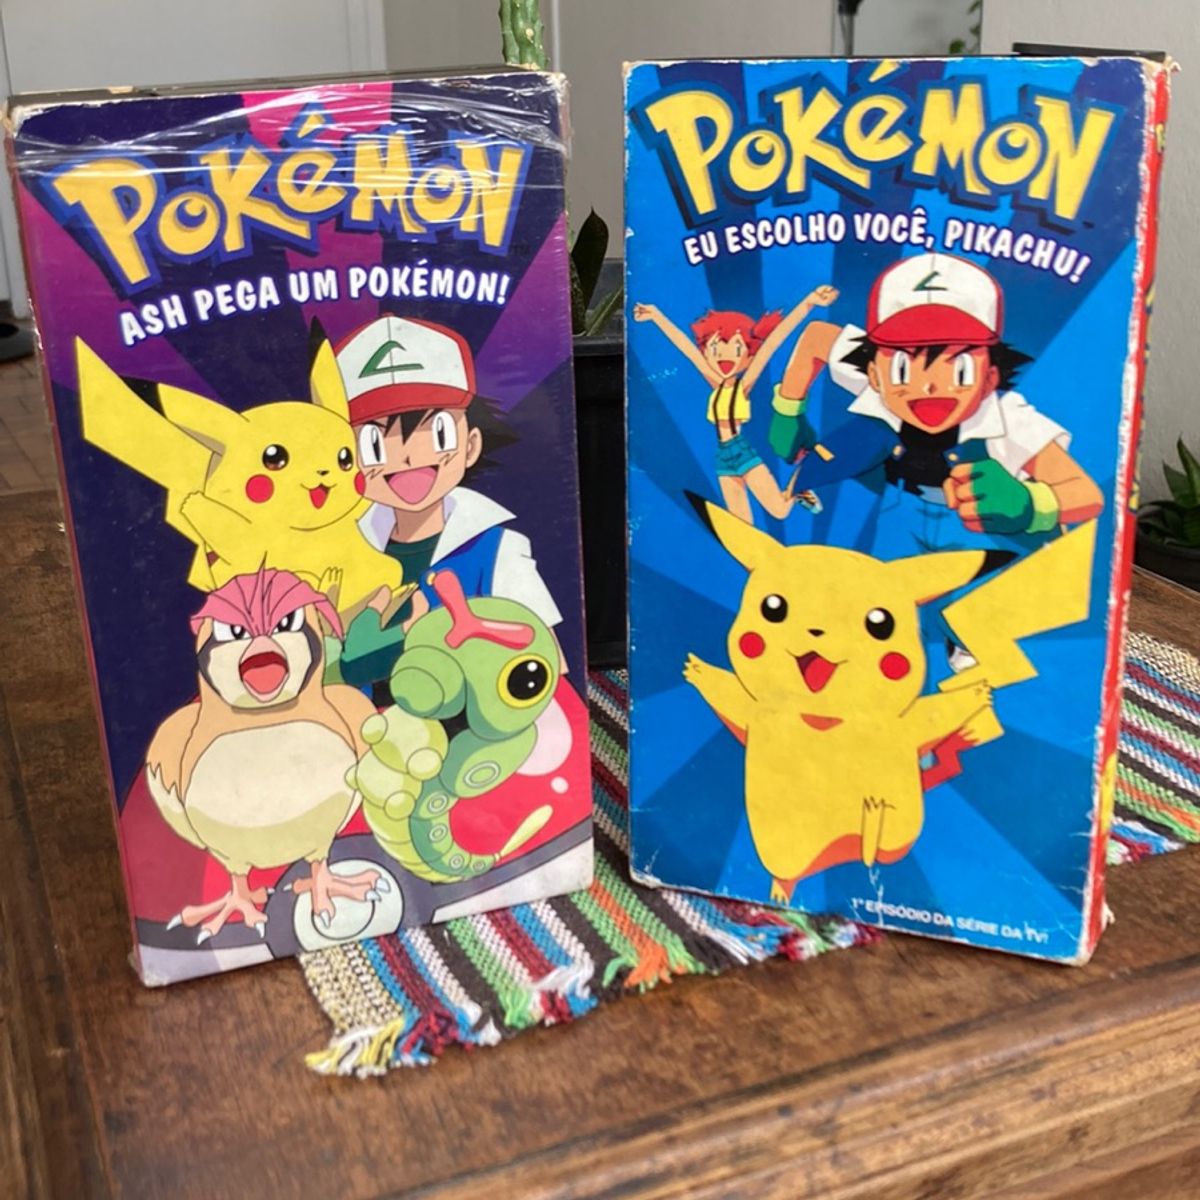 3 Fitas Vhs Pokémon 2, 3 e 4 (Originais)